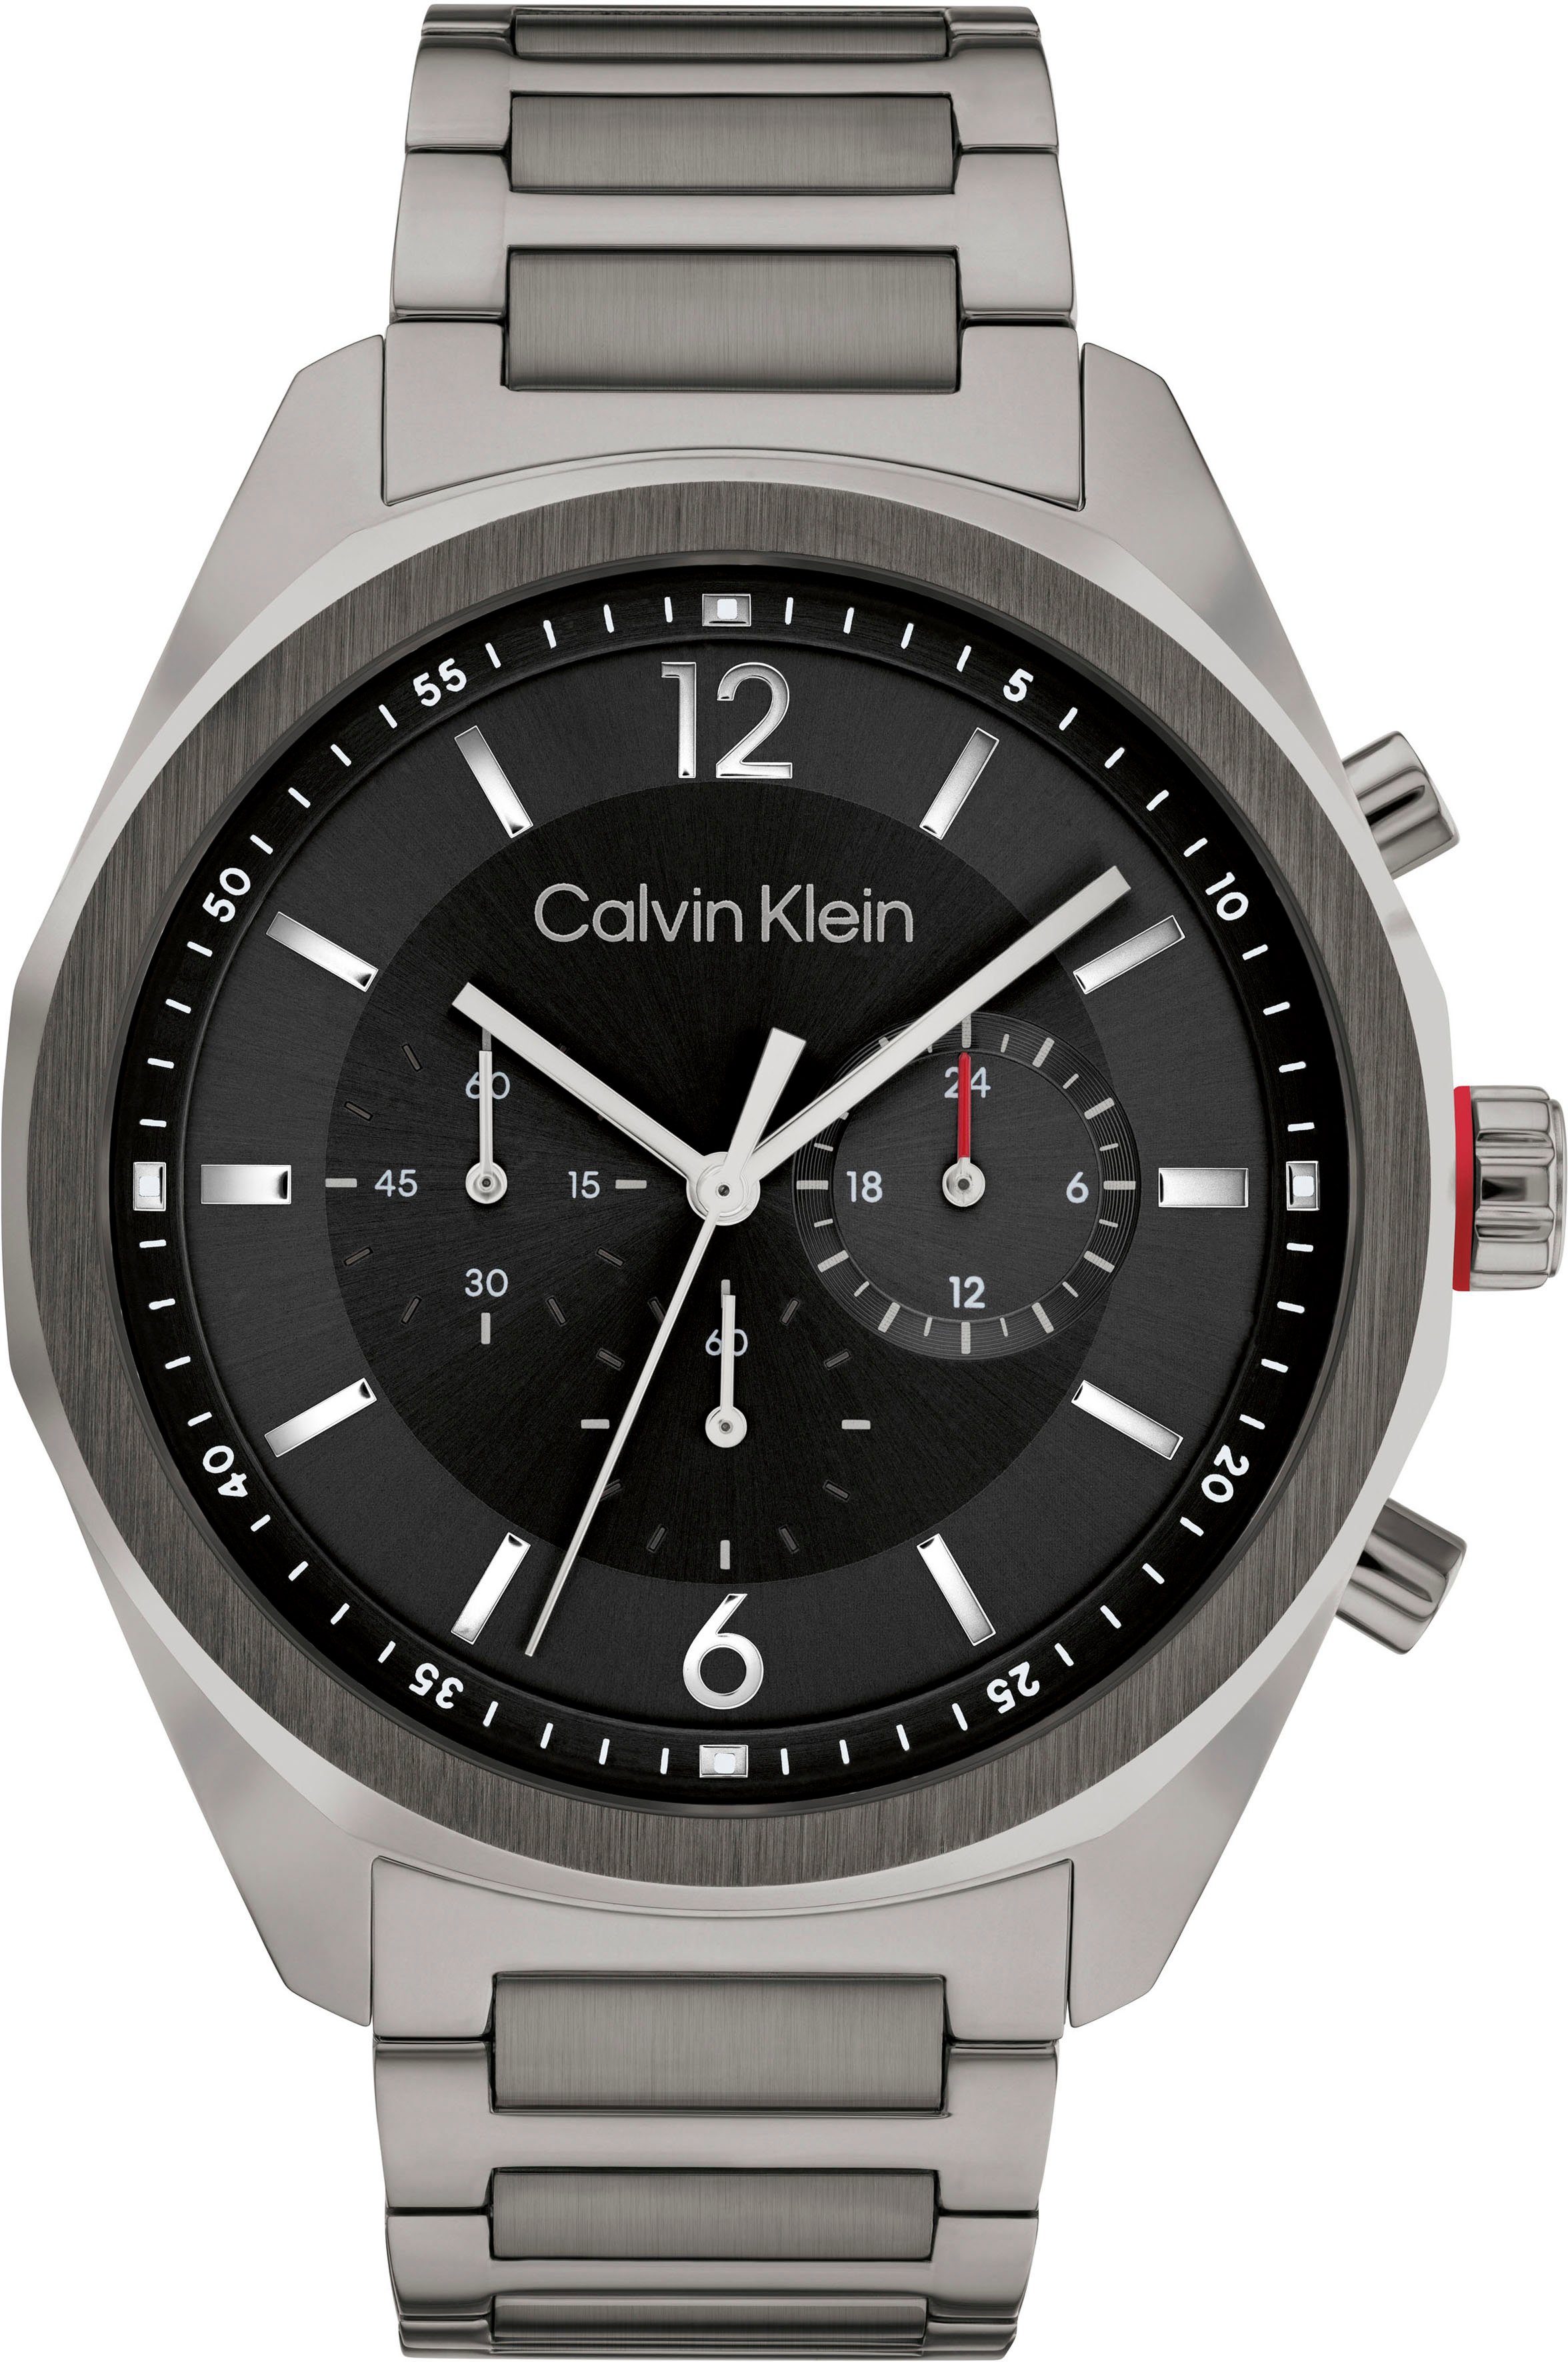 Calvin Klein Chronograph ARCHITECTURAL, 25200267, Quarzuhr, Armbanduhr, Herrenuhr, Stoppfunktion, 12/24-Stunden-Anzeige